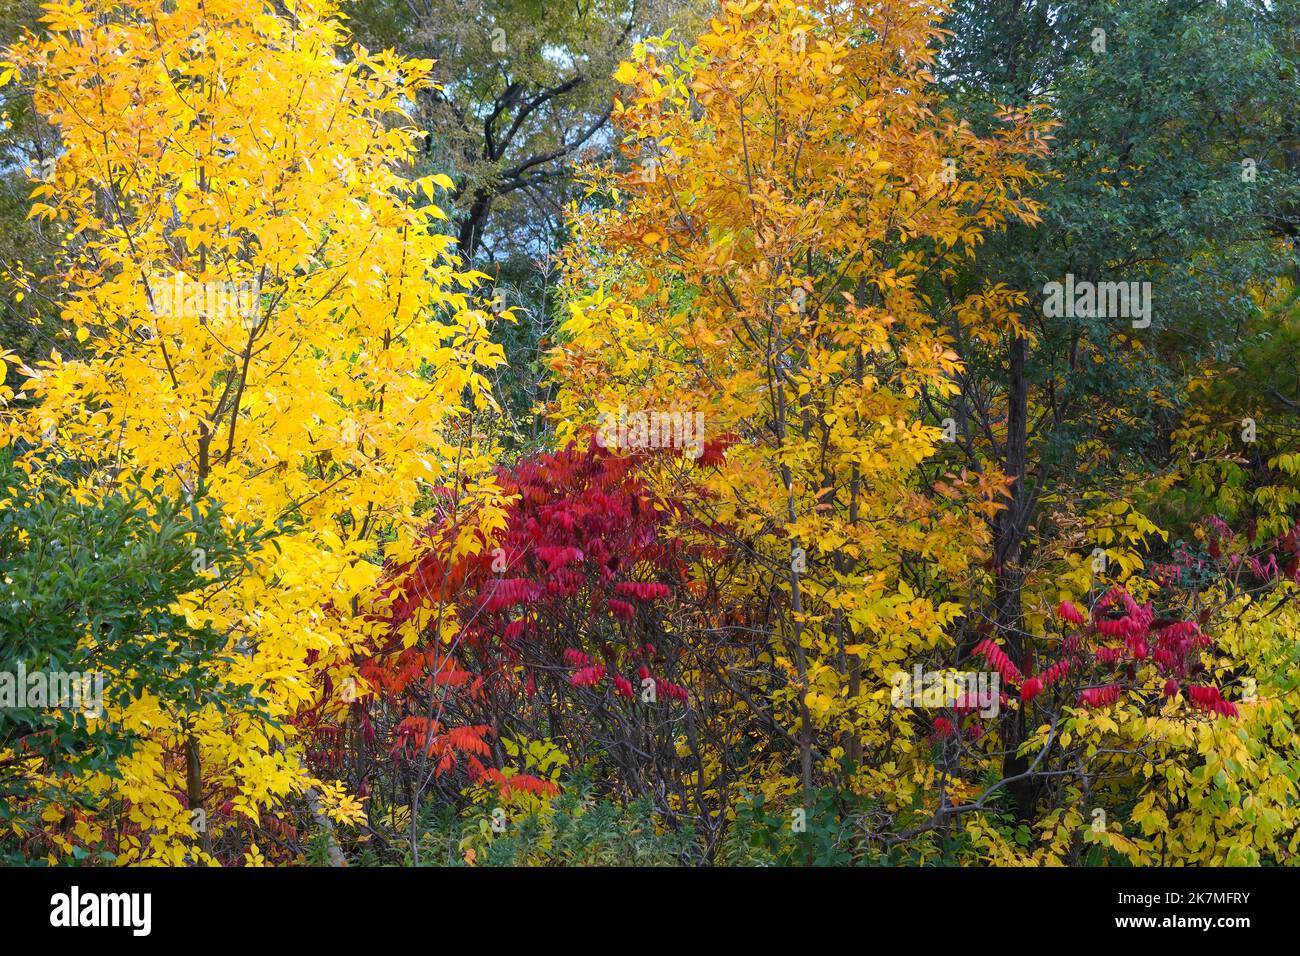 Couleurs d'automne dans un parc public de Toronto. Terraview Park en automne Banque D'Images